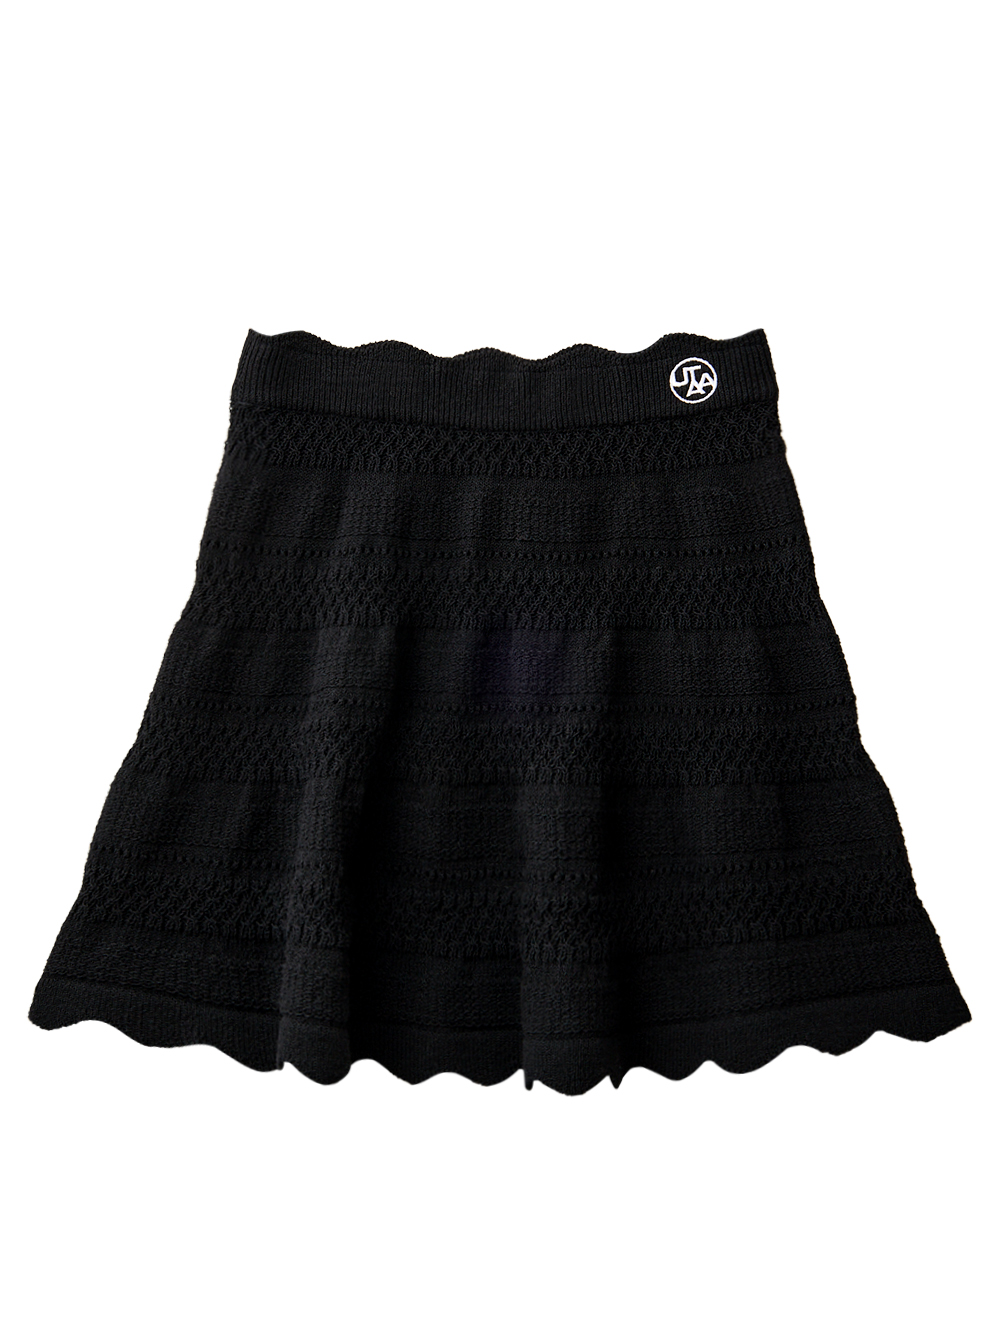 UTAA Twin ruffle Flare Skirt : Black (UD2SKF430BK)